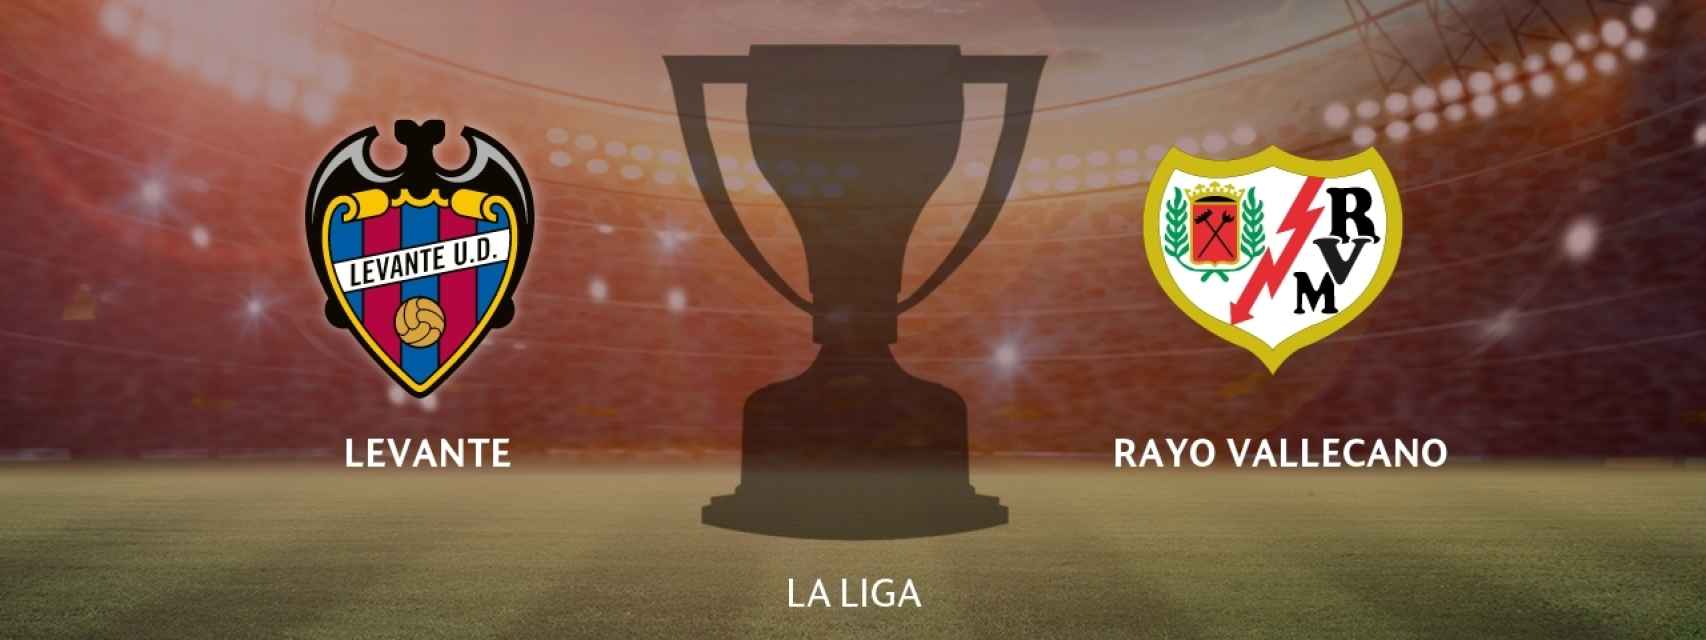 Levante - Rayo Vallecano: siga en directo el partido de La Liga